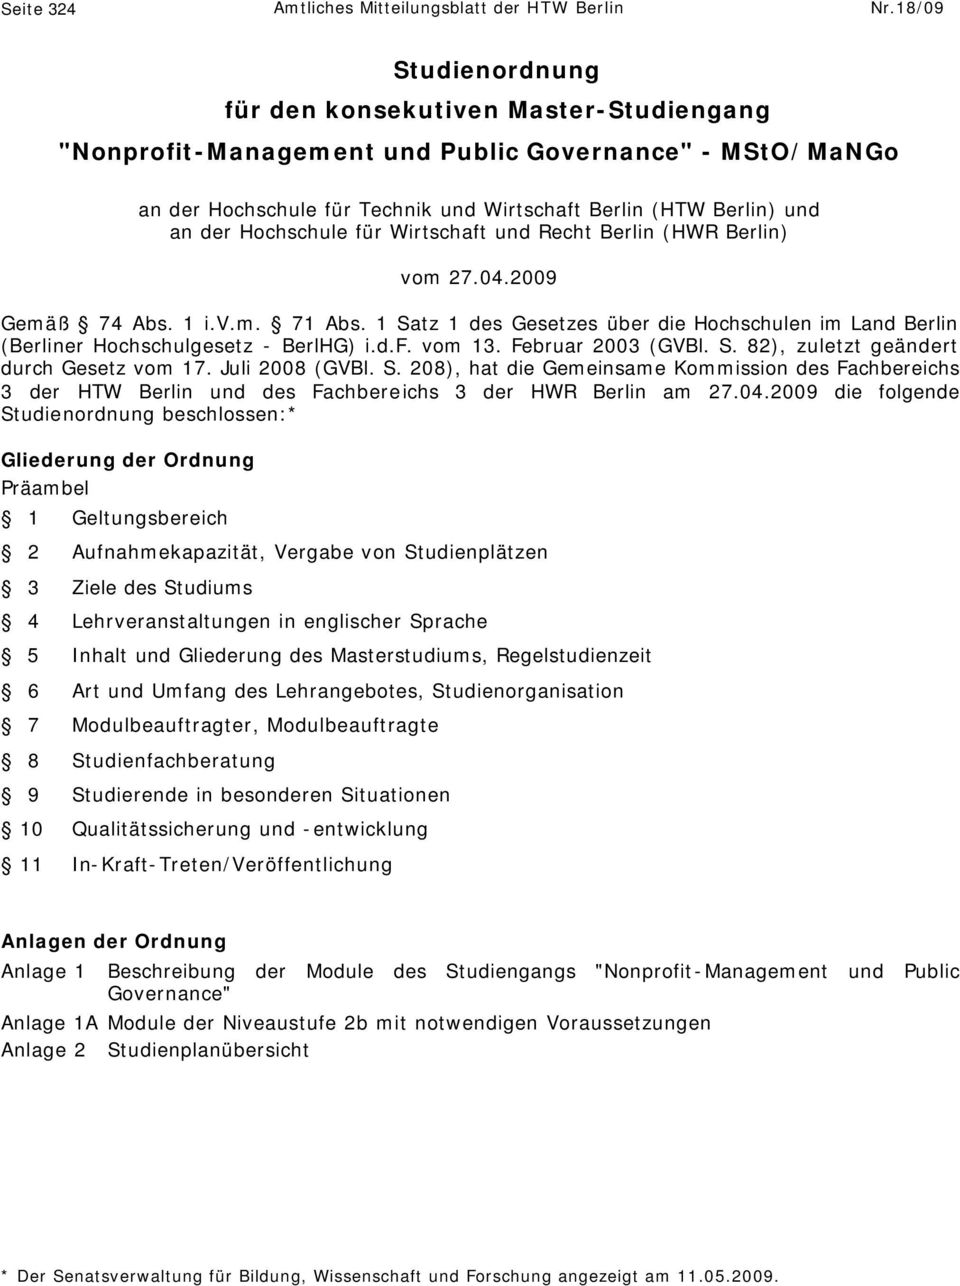 Hochschule für Wirtschaft und Recht Berlin (HWR Berlin) vom 27.04.2009 Gemäß 74 Abs. 1 i.v.m. 71 Abs. 1 Satz 1 des Gesetzes über die Hochschulen im Land Berlin (Berliner Hochschulgesetz - BerlHG) i.d.f. vom 13.